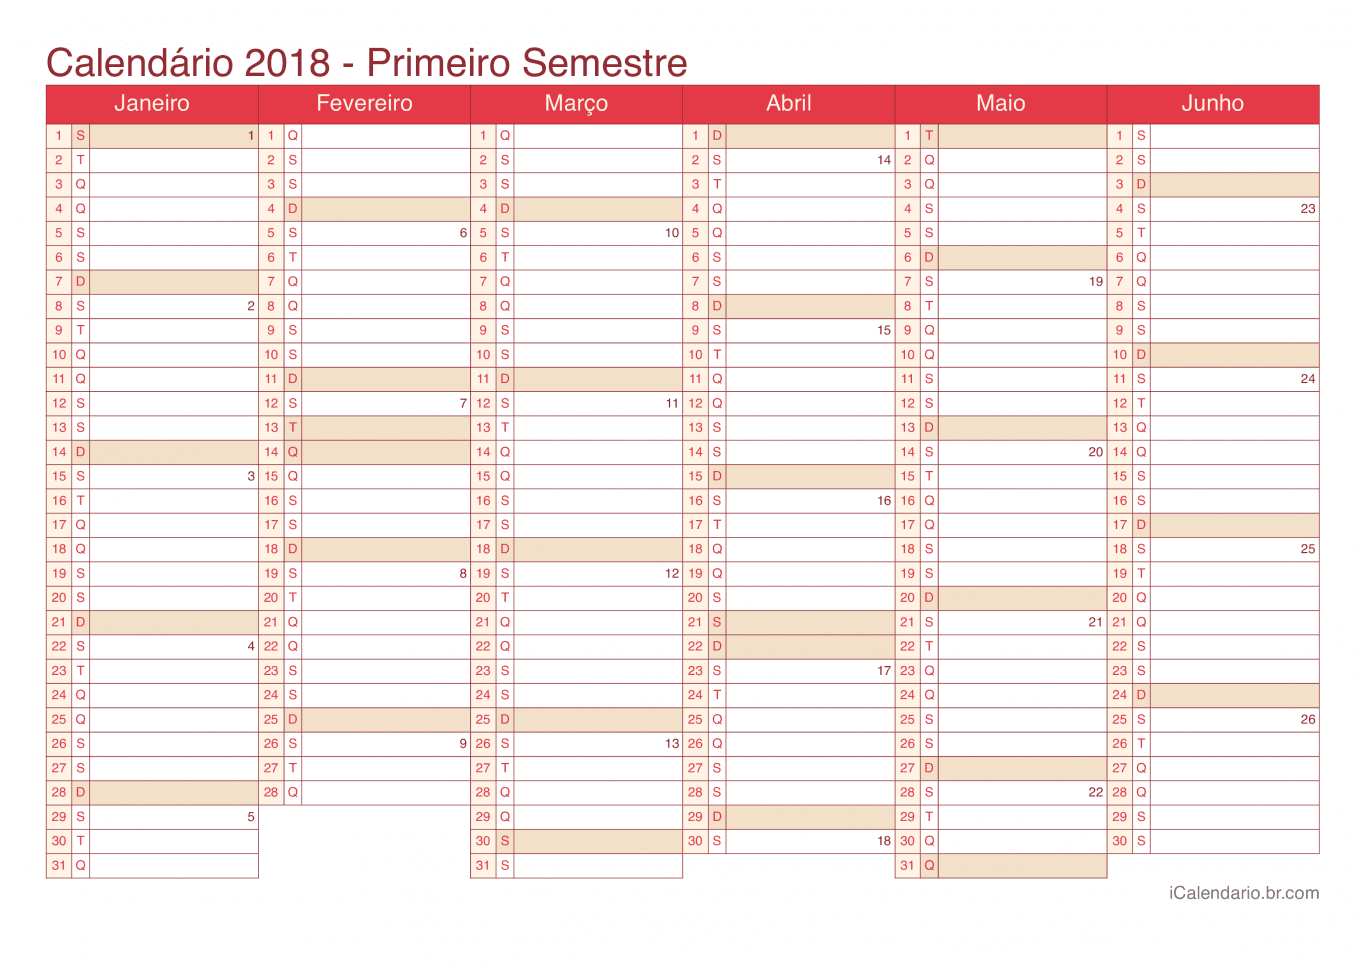 Calendário por semestre com números da semana 2018 - Cherry